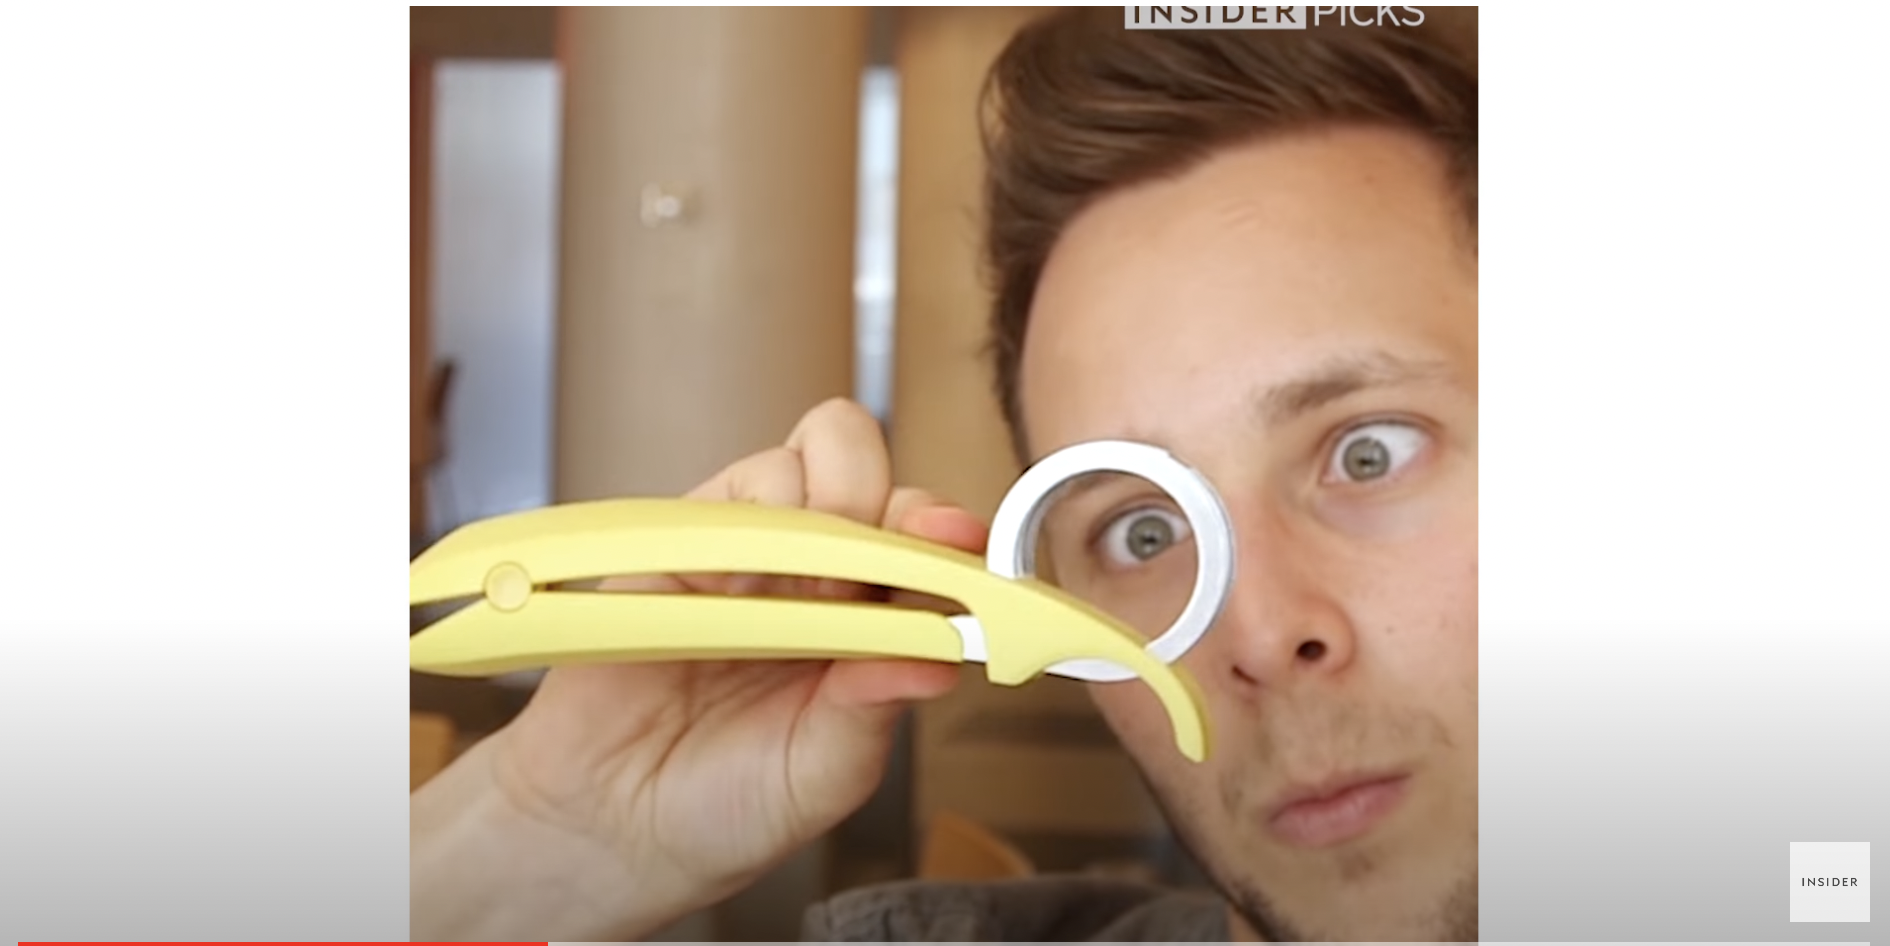 Ein Bananenschneider | Quelle: YouTube/Insider